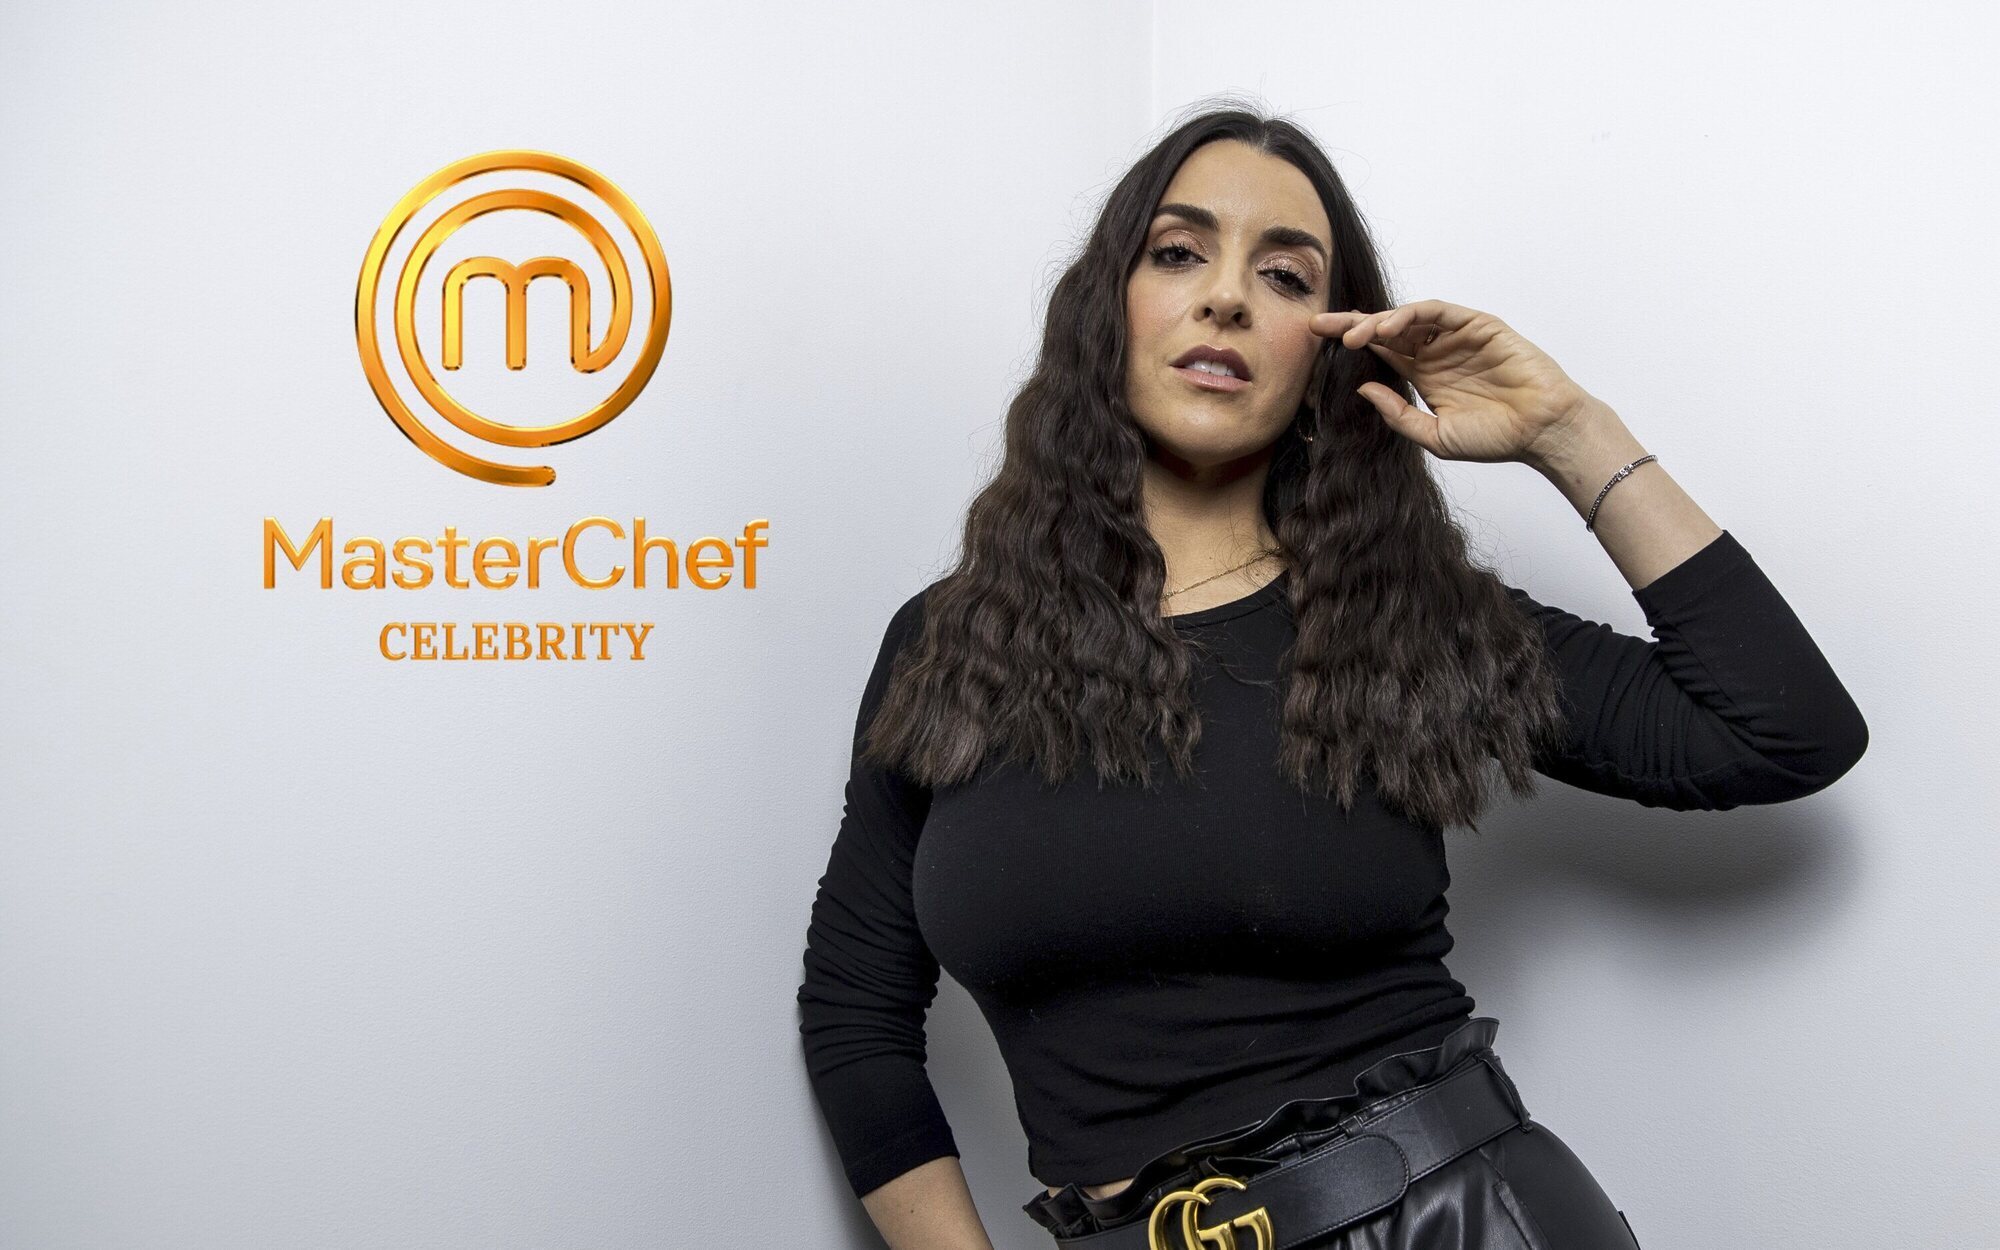 'MasterChef Celebrity 7': Ruth Lorenzo, Patricia Conde, Daniela Santiago, Norma Duval y otros 9 concursantes